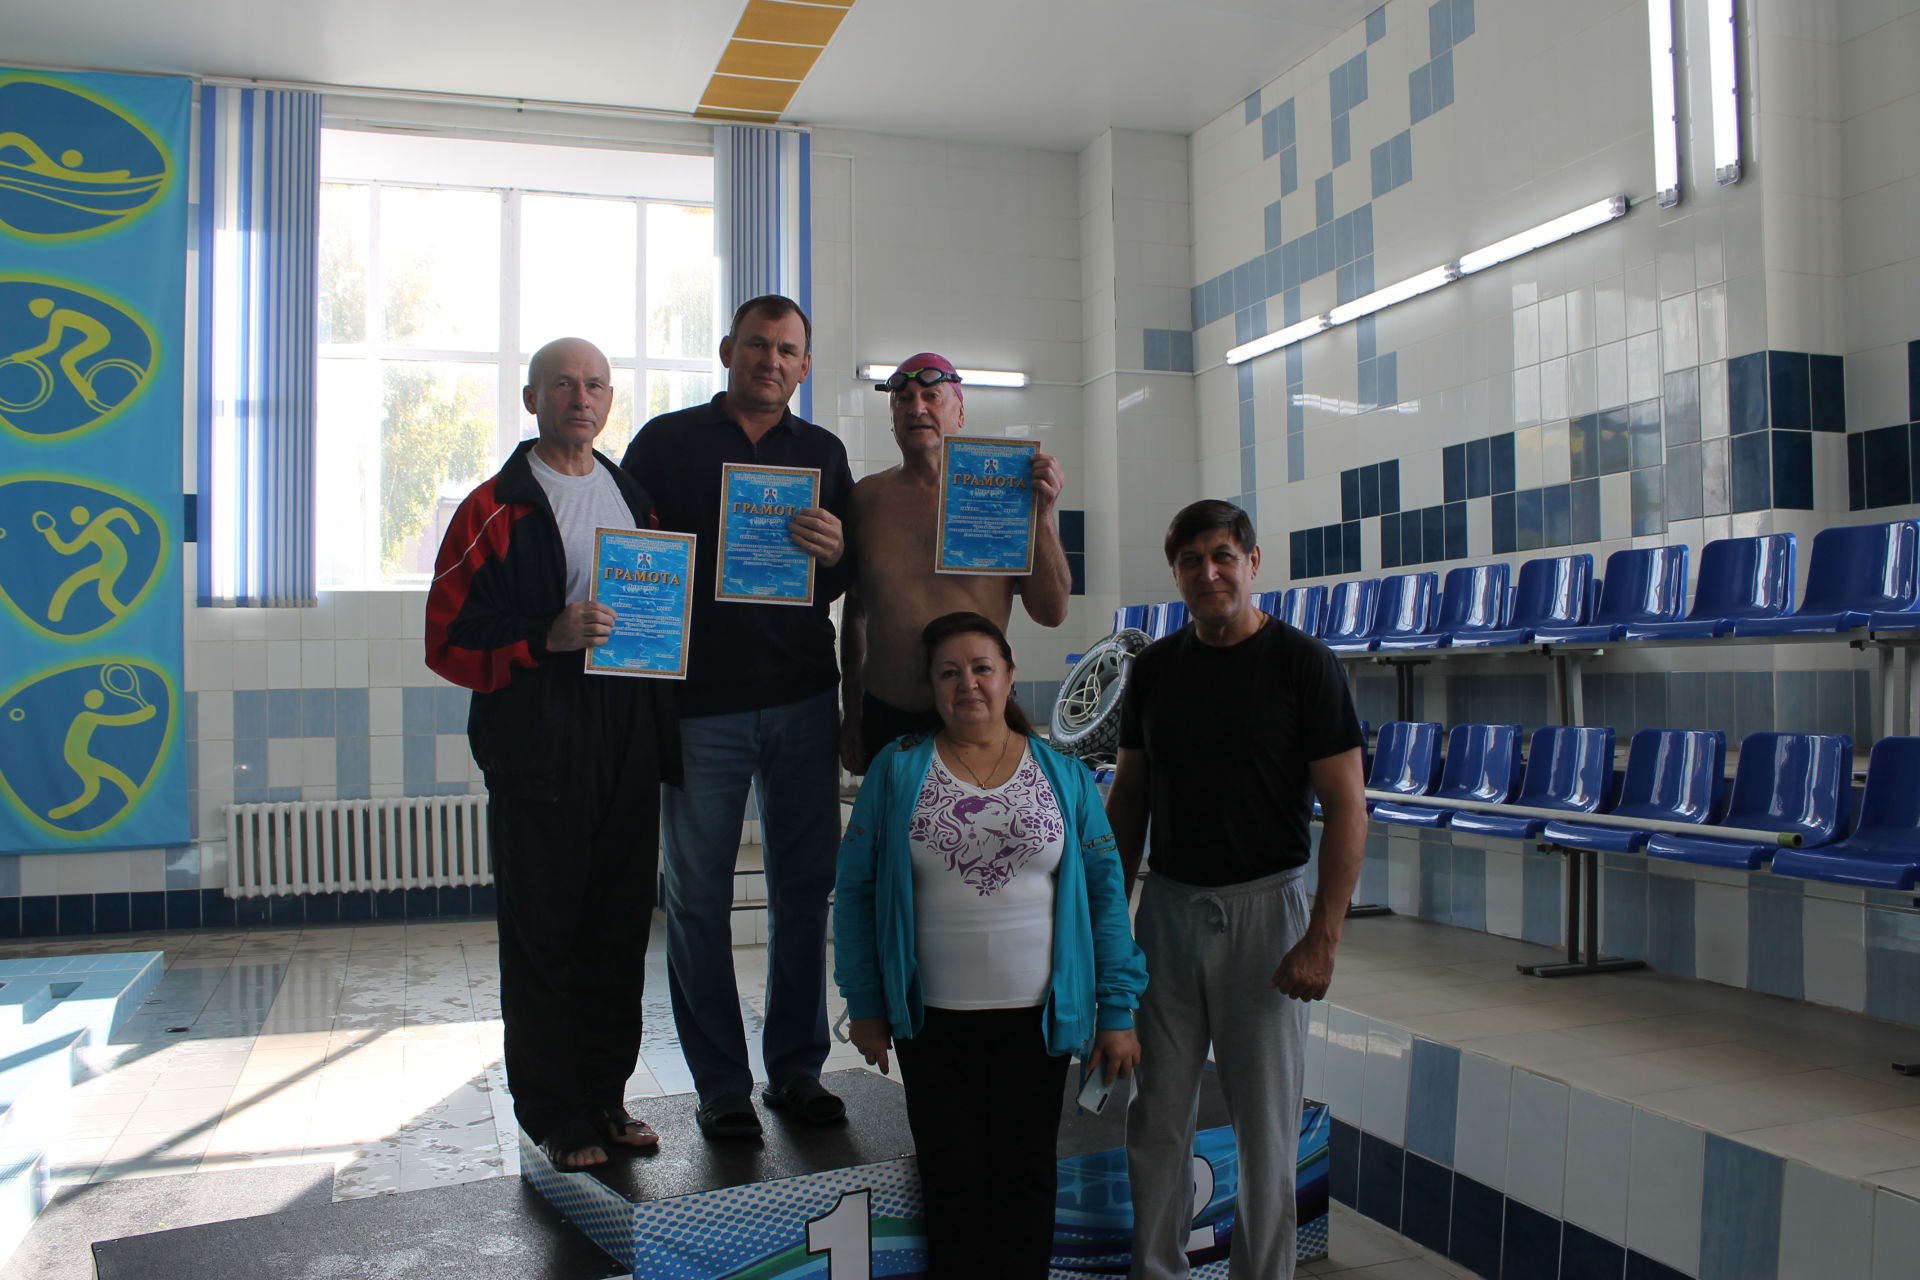 В Менделеевске прошли соревнования по плаванию среди пенсионеров